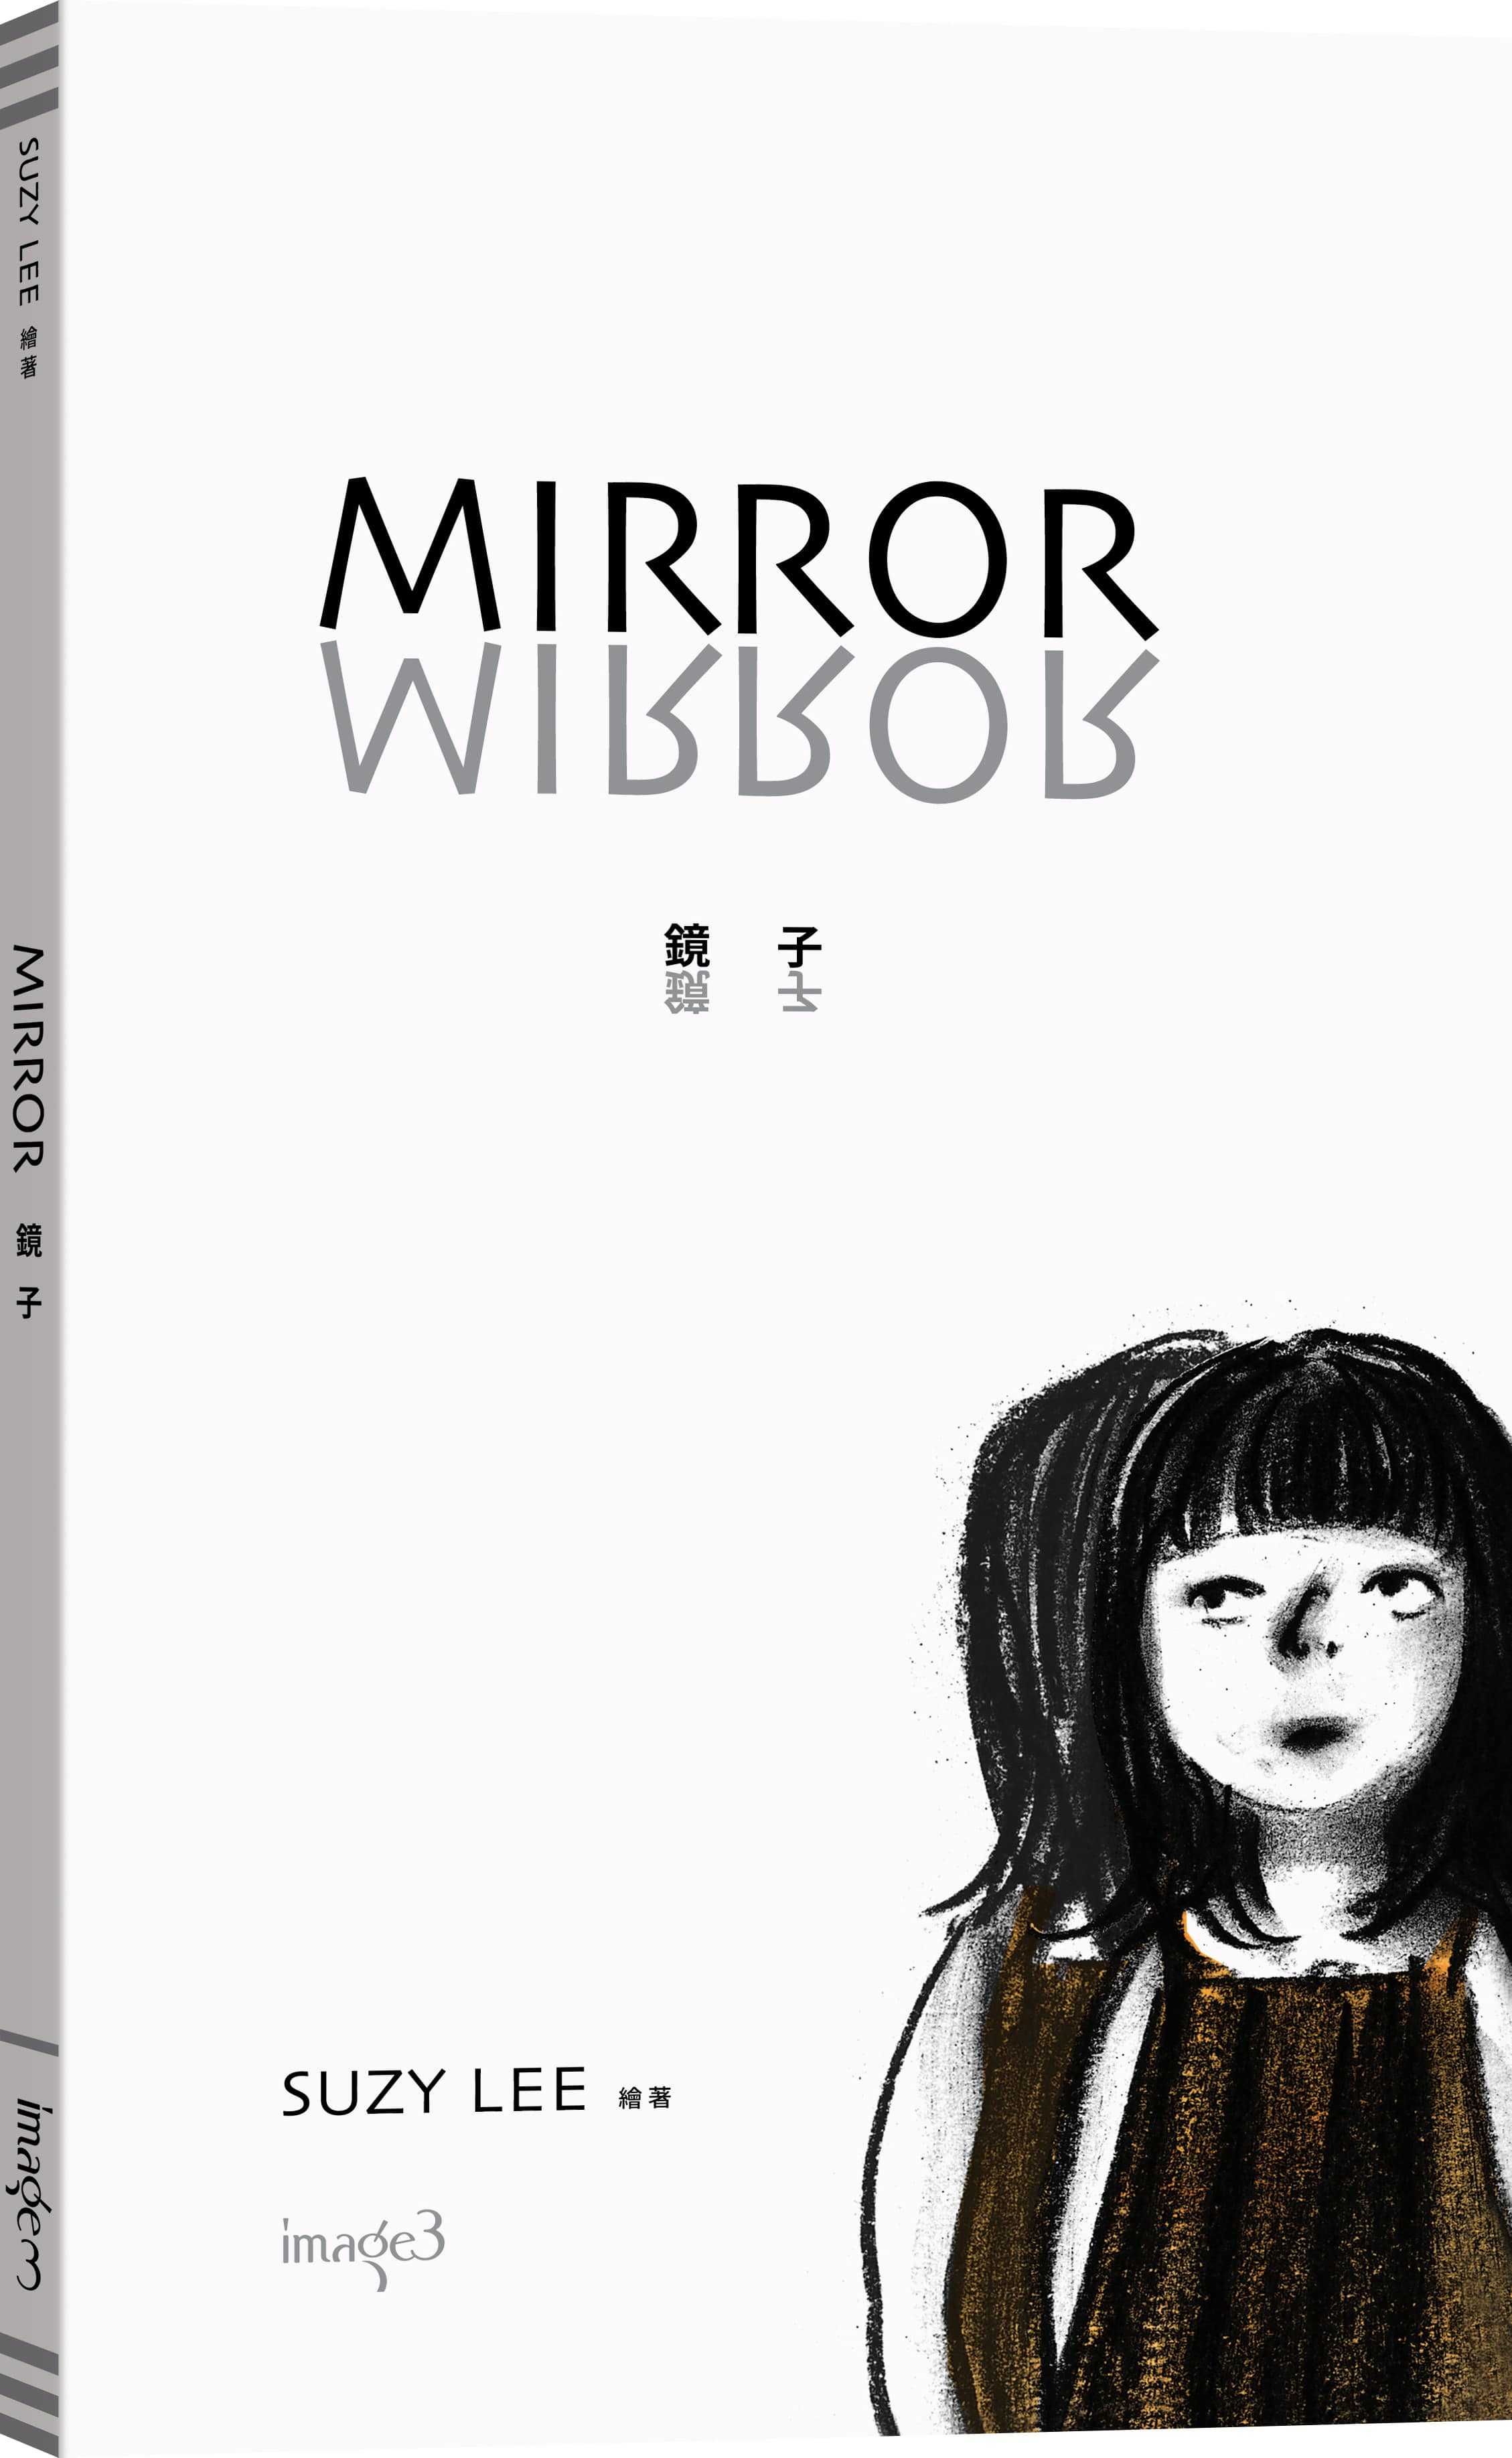 【大塊】鏡子/蘇西・李經典繪本《邊界三部曲》(《鏡子》+《海浪》+《影子》